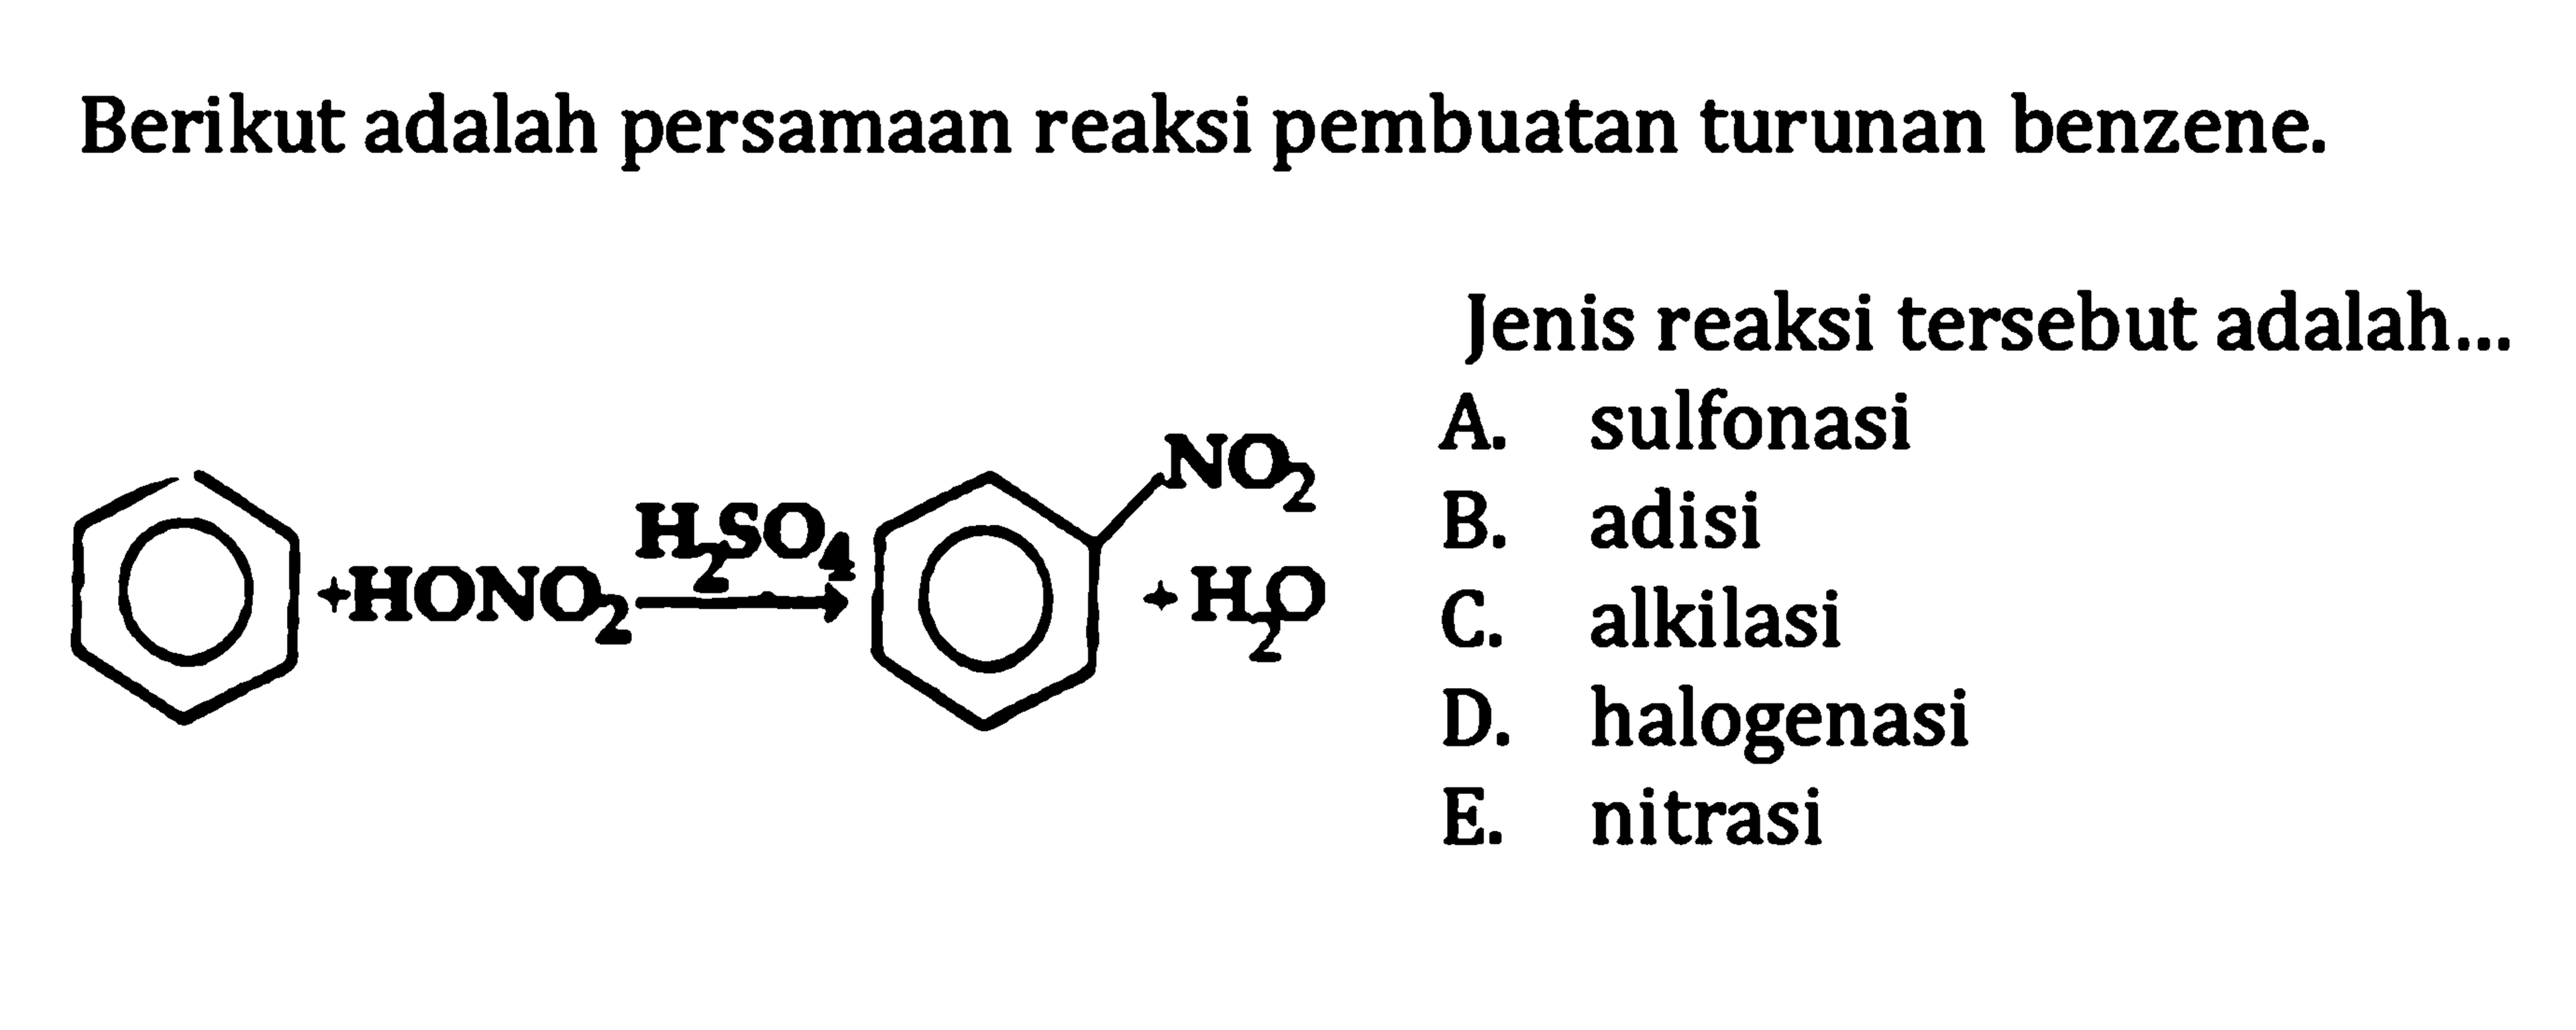 Berikut adalah persamaan reaksi pembuatan turunan benzene.
Jenis reaksi tersebut adalah...
A. sulfonasi
B. adisi
C. alkilasi
D. halogenasi
E. nitrasi